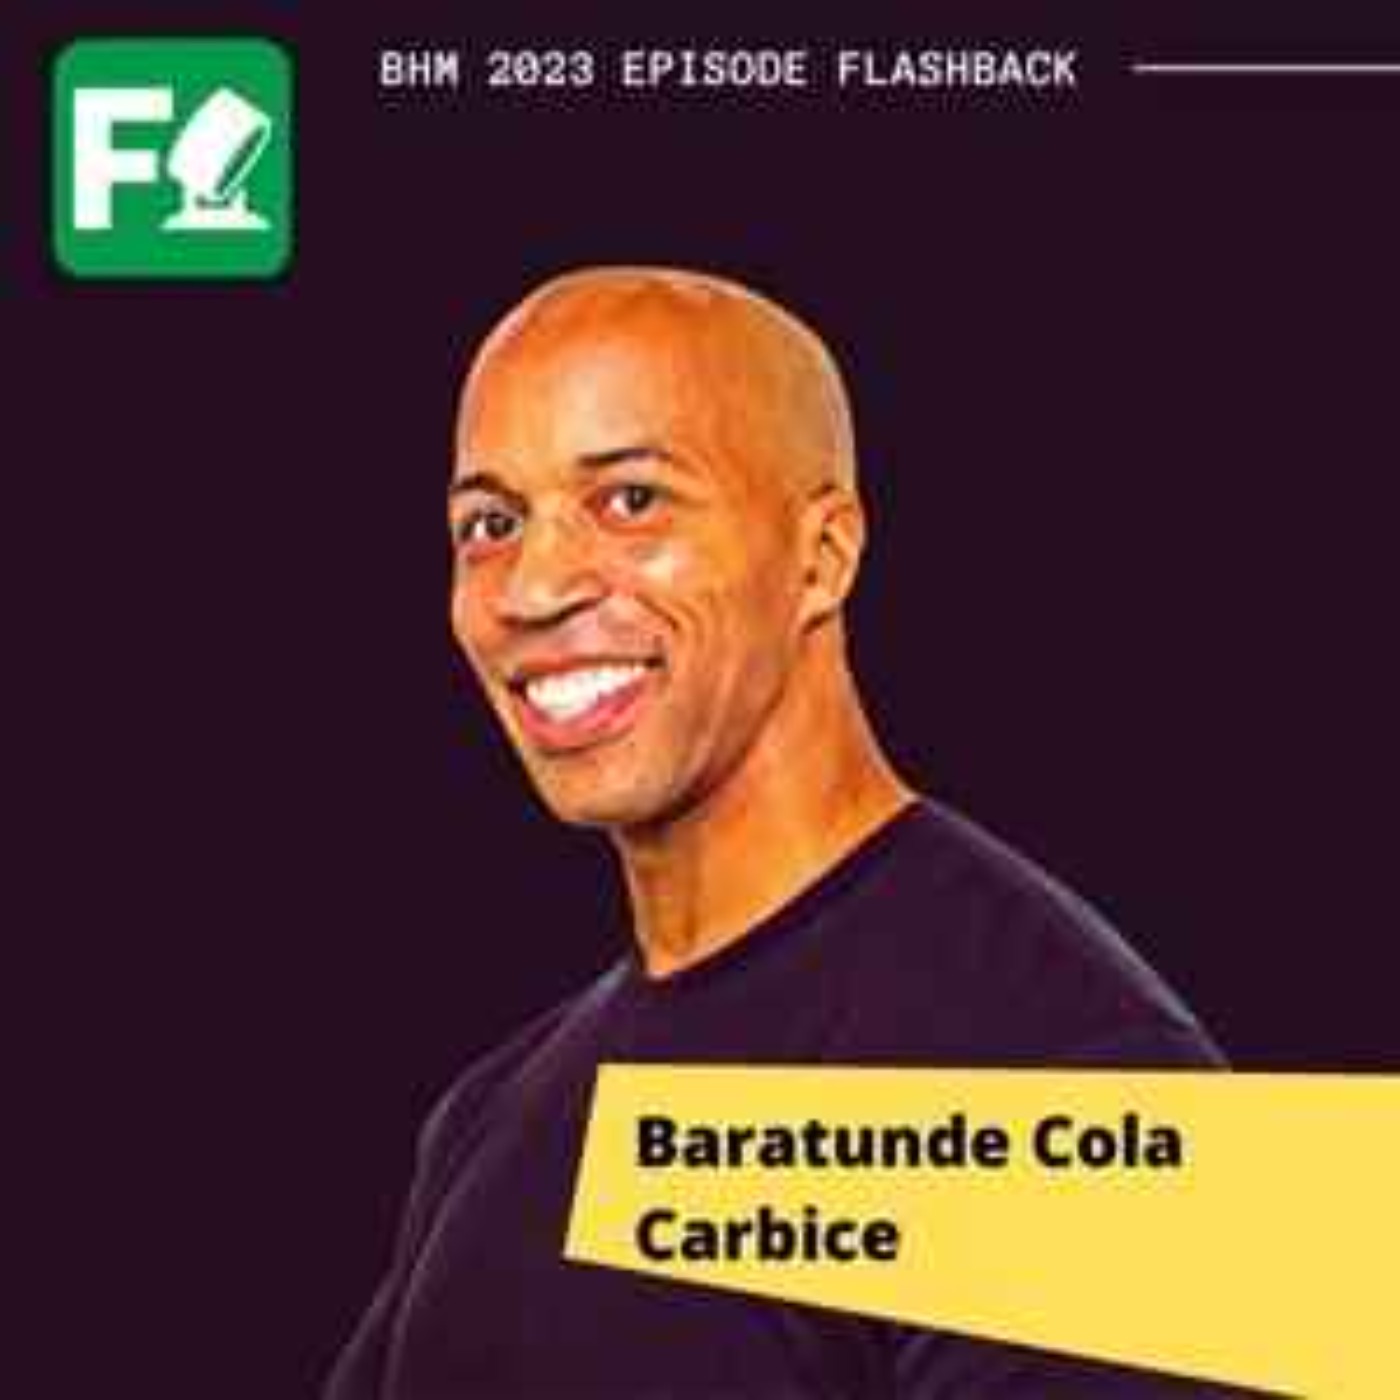 February Flashback Clips: Baratunde Cola